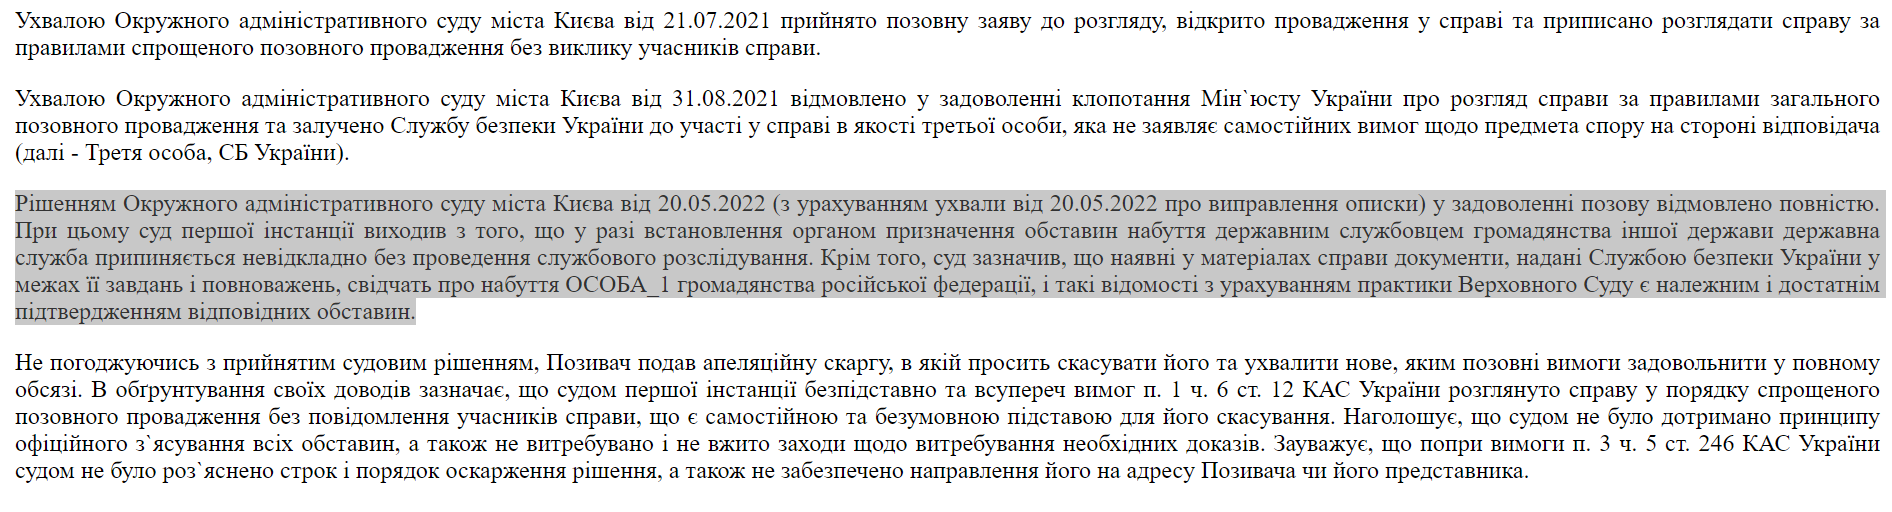 Решение Окружного административного суда в Киеве от 20 мая 2022 года